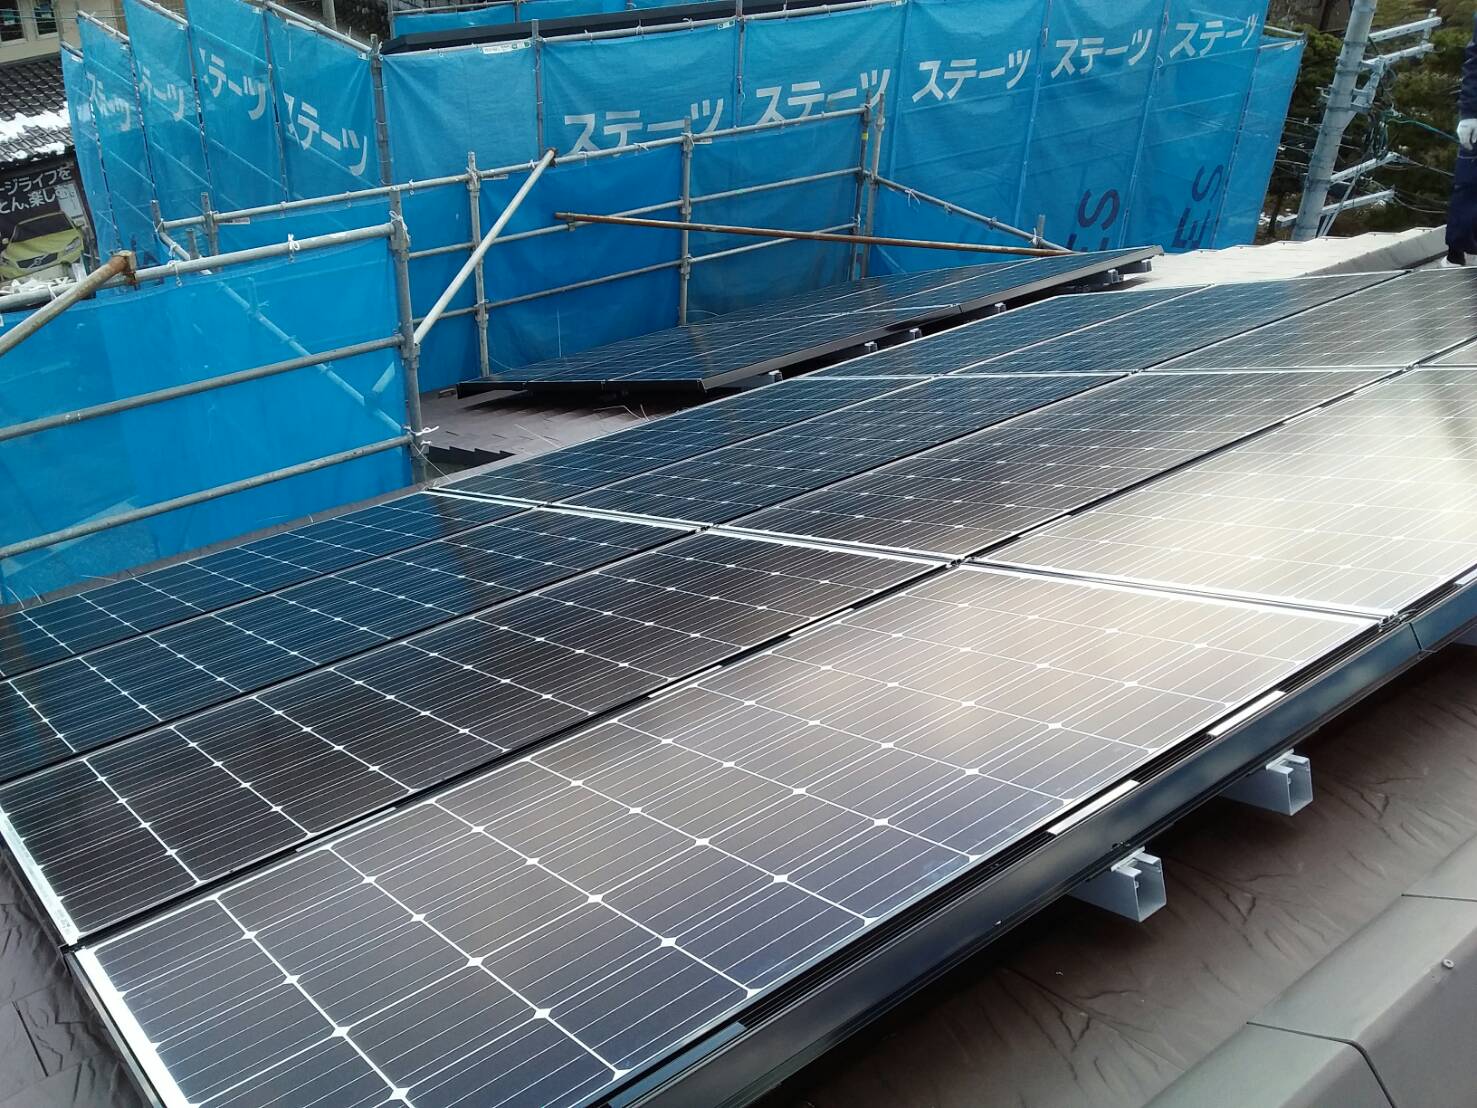 富山市新築太陽光パネル設置工事 新着情報 富山県の太陽光発電 太陽光 ソーラーパネルの設置 ご相談は堀瓦工業へ